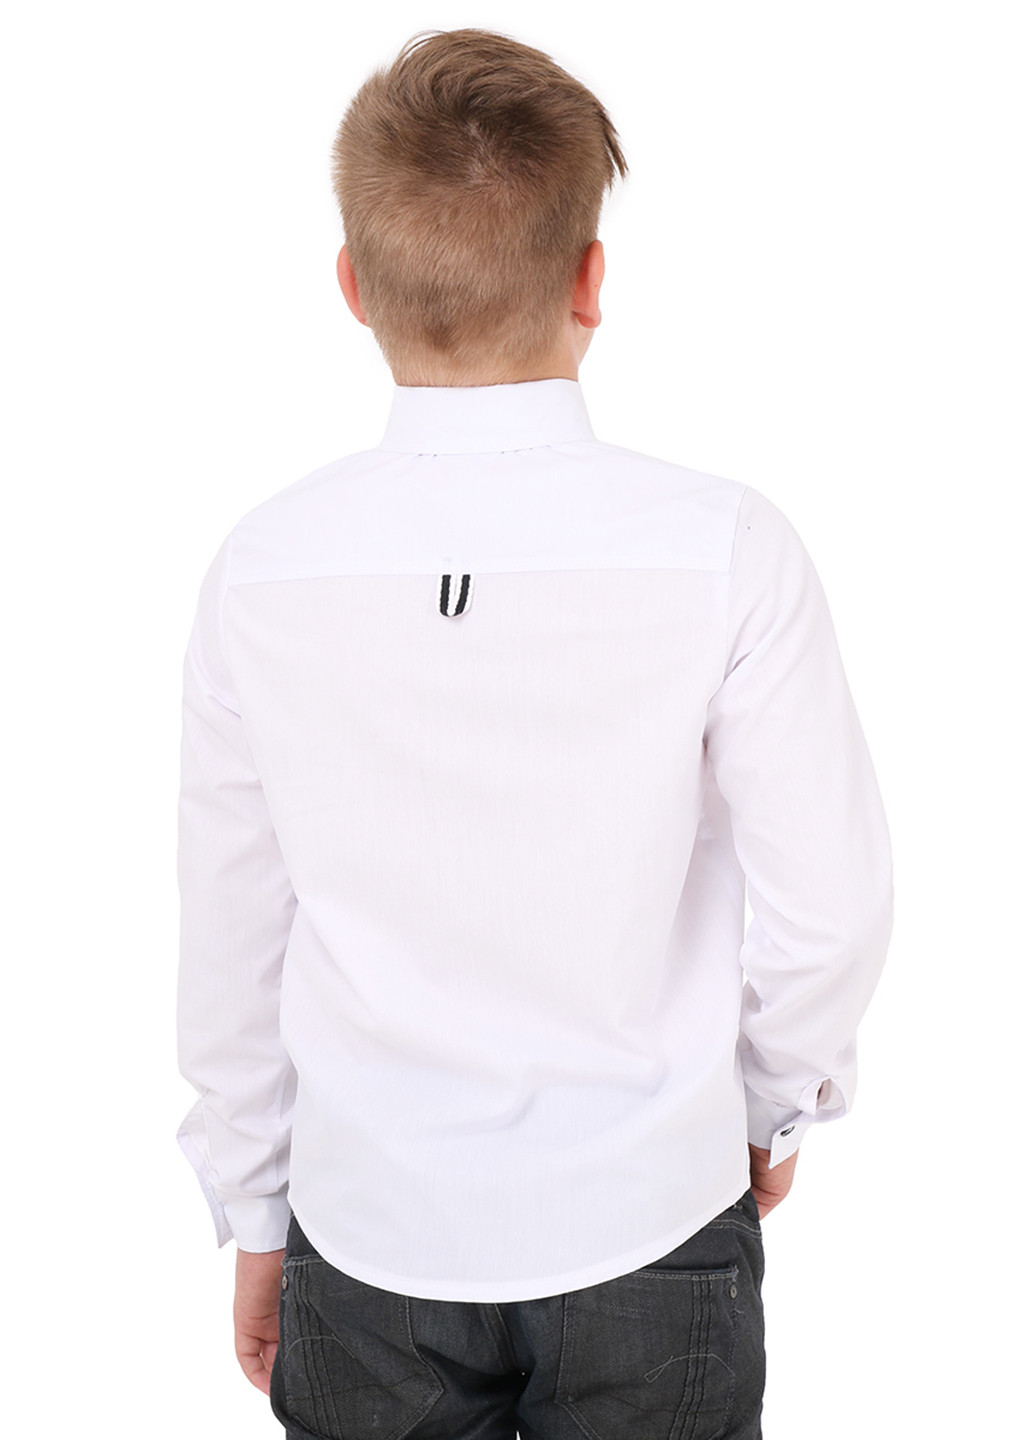 Белая классическая рубашка Timbo с длинным рукавом